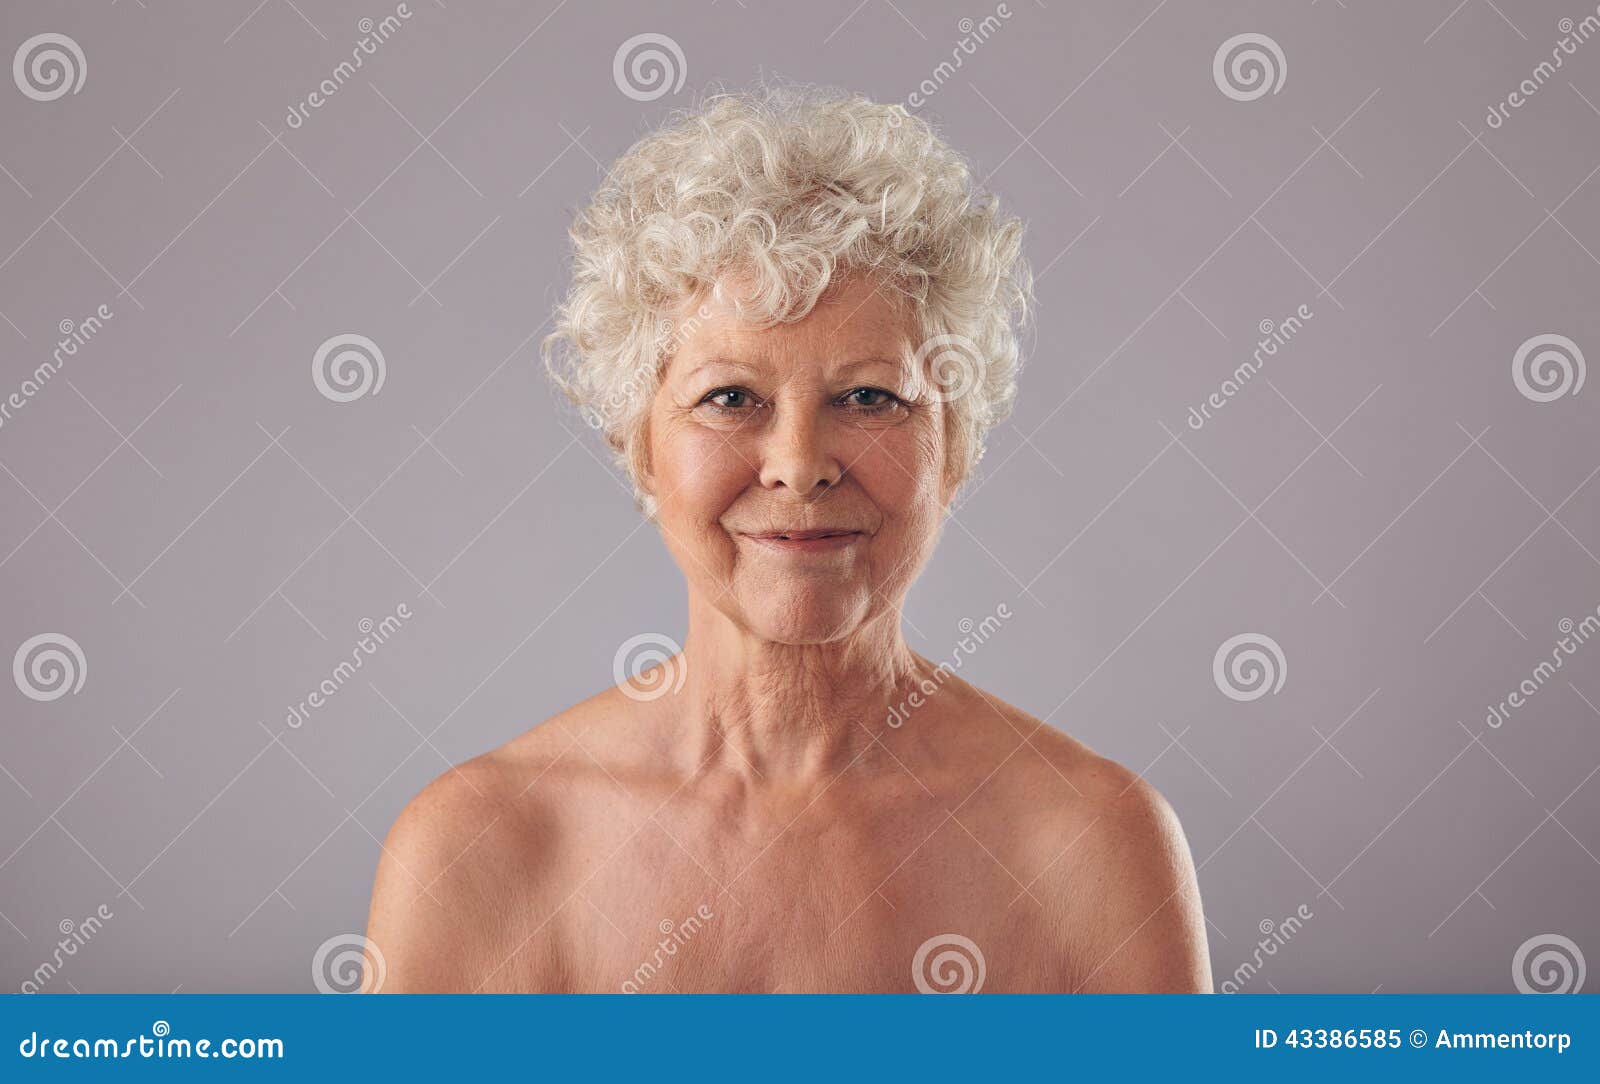 Голая Грудь Пожилых Женщин Фото